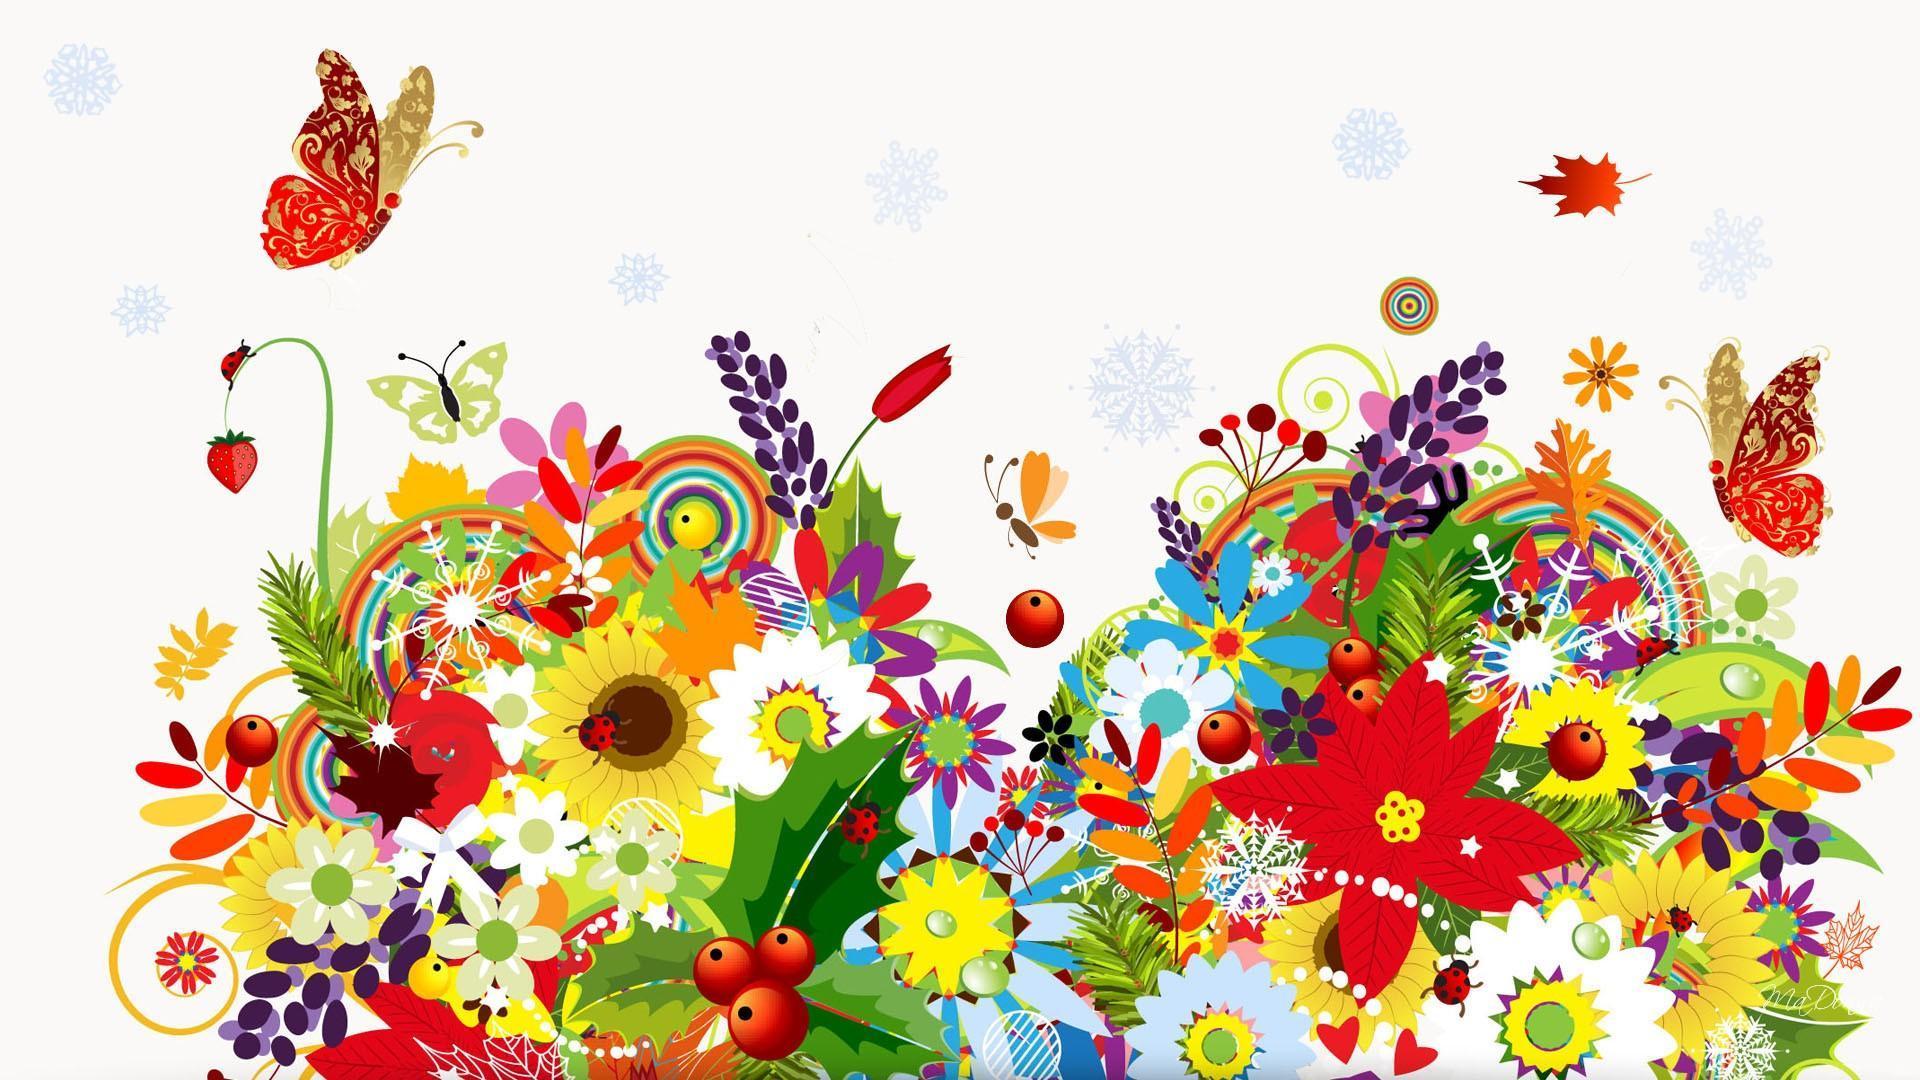 Spring Summer Fall Winter HD desktop wallpaper, Widescreen, High